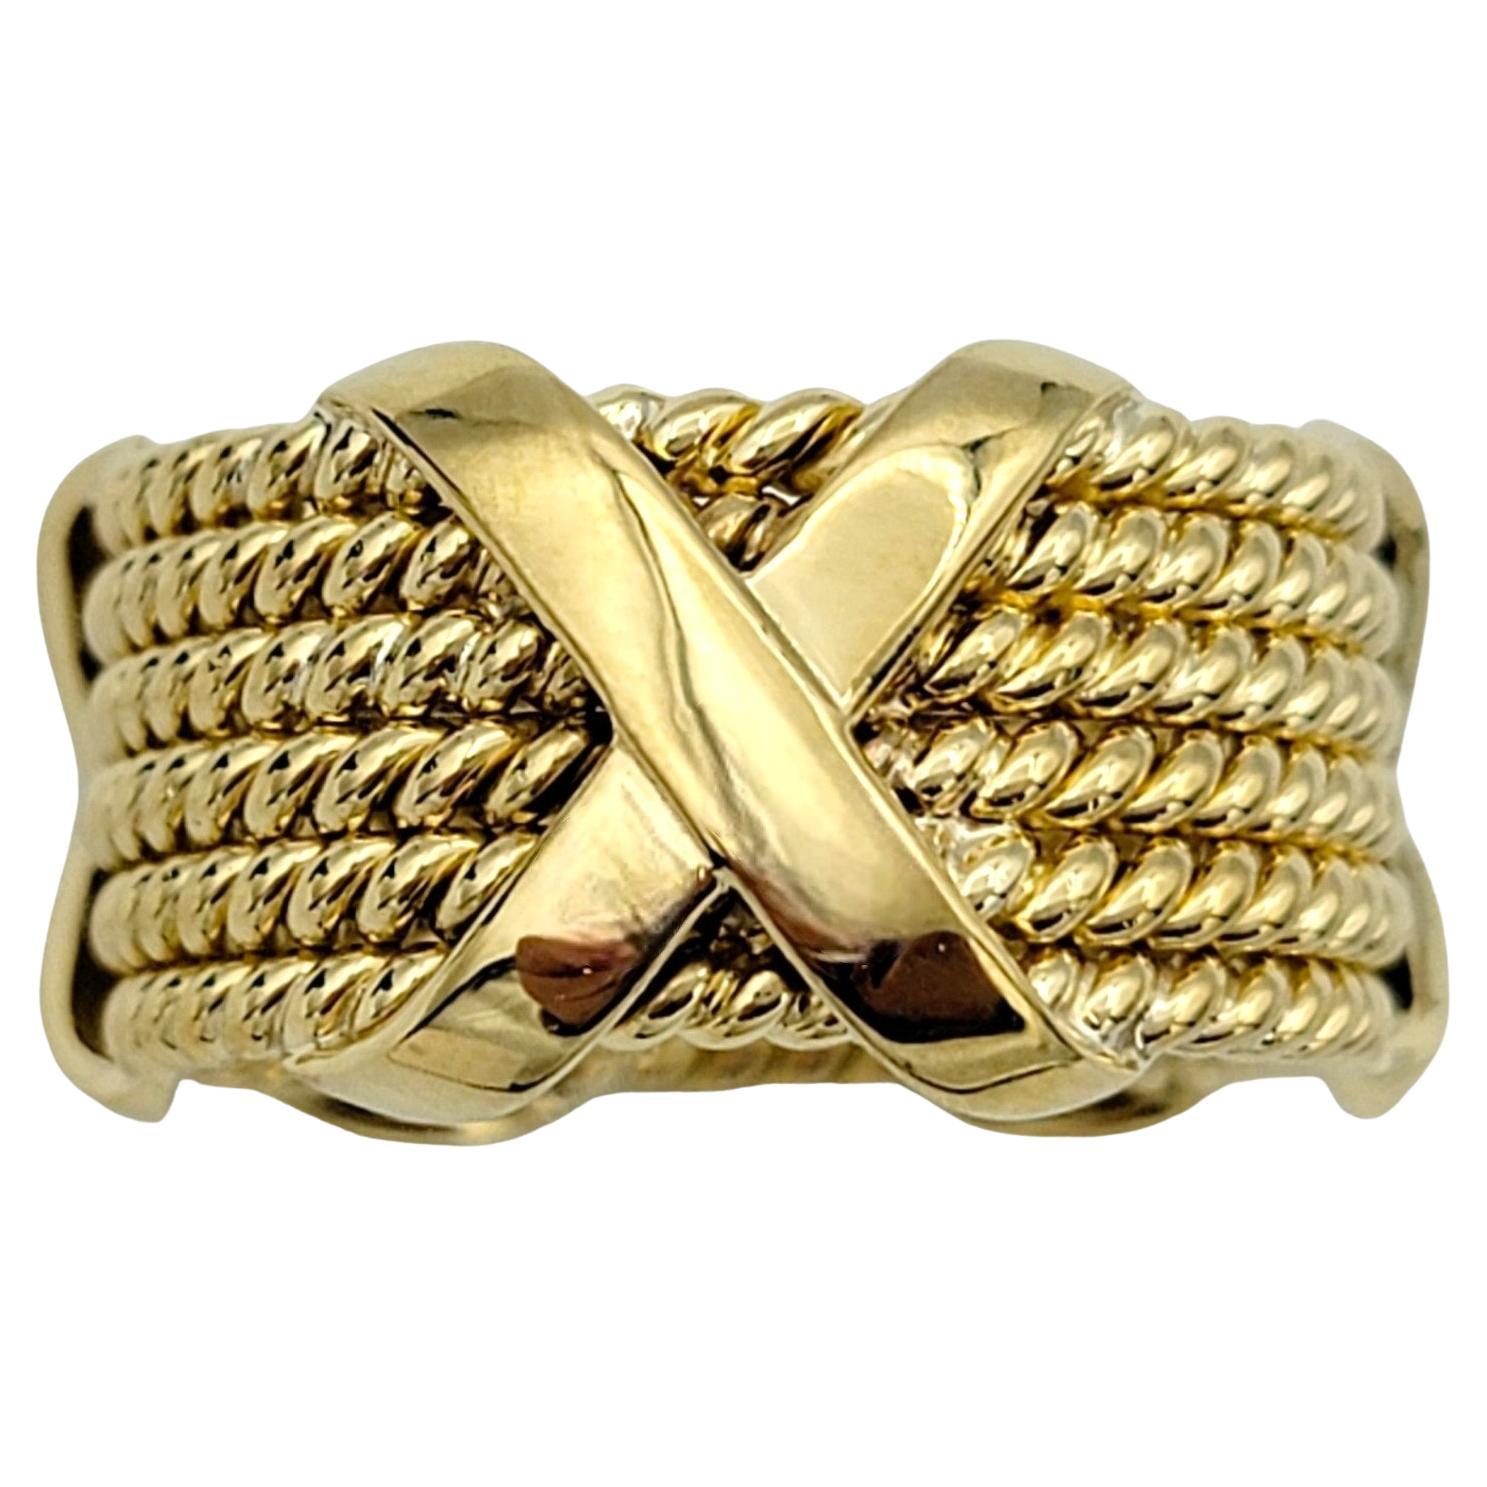 Ring Größe: 8.5

Die mit viel Liebe zum Detail gefertigte Tiffany & Co. Der 6-reihige Schlumberger-Ring im Seil-X-Design strahlt Raffinesse und zeitlosen Charme aus. Dieser exquisite Ring aus 18 Karat Gelbgold besteht aus sechs ineinander